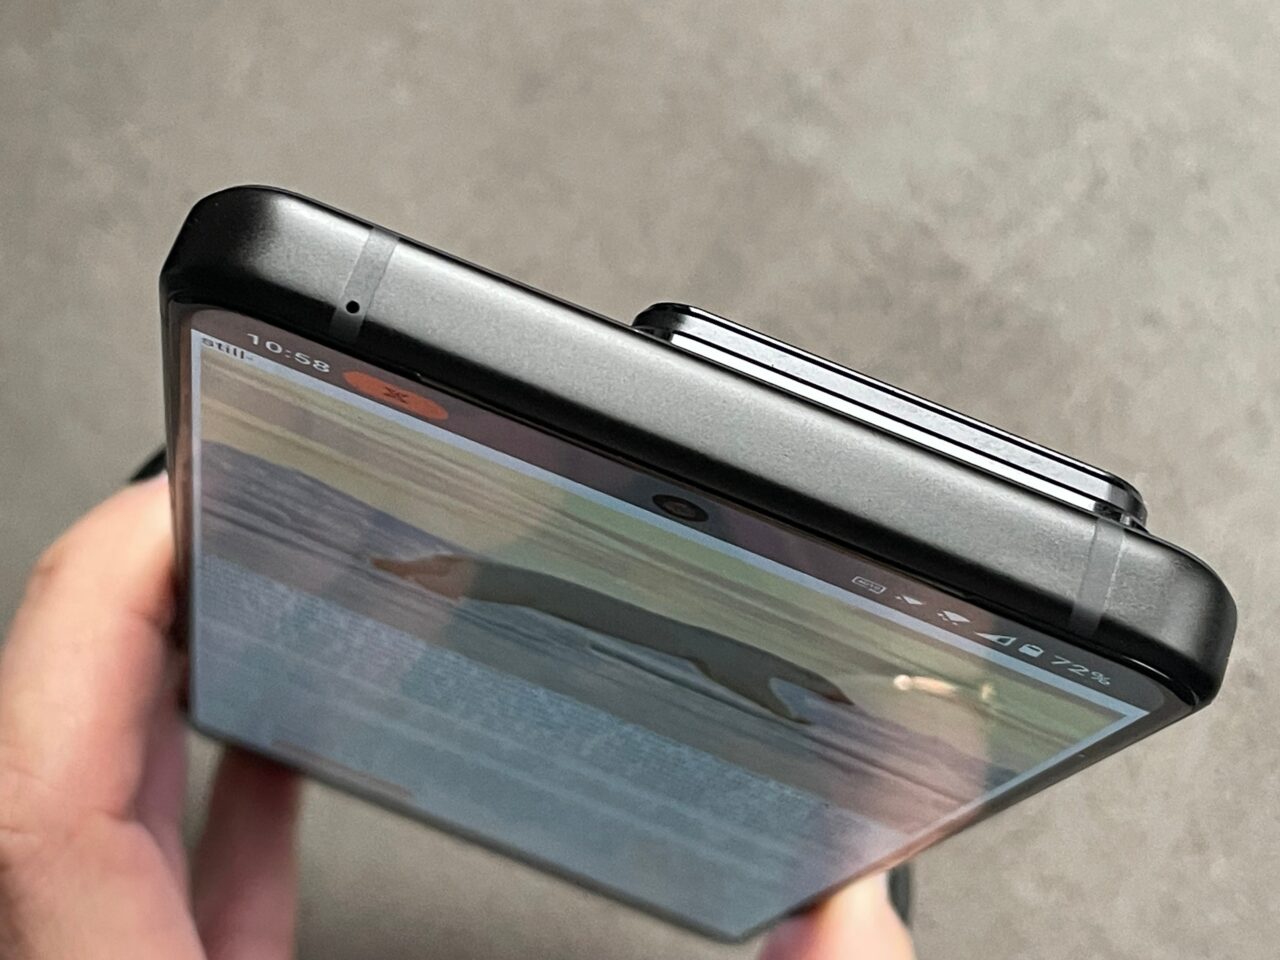 Skladany smartfon trzymany w ręce z widocznym przednim aparatem i wyświetlaczem pokazującym część interfejsu użytkownika.